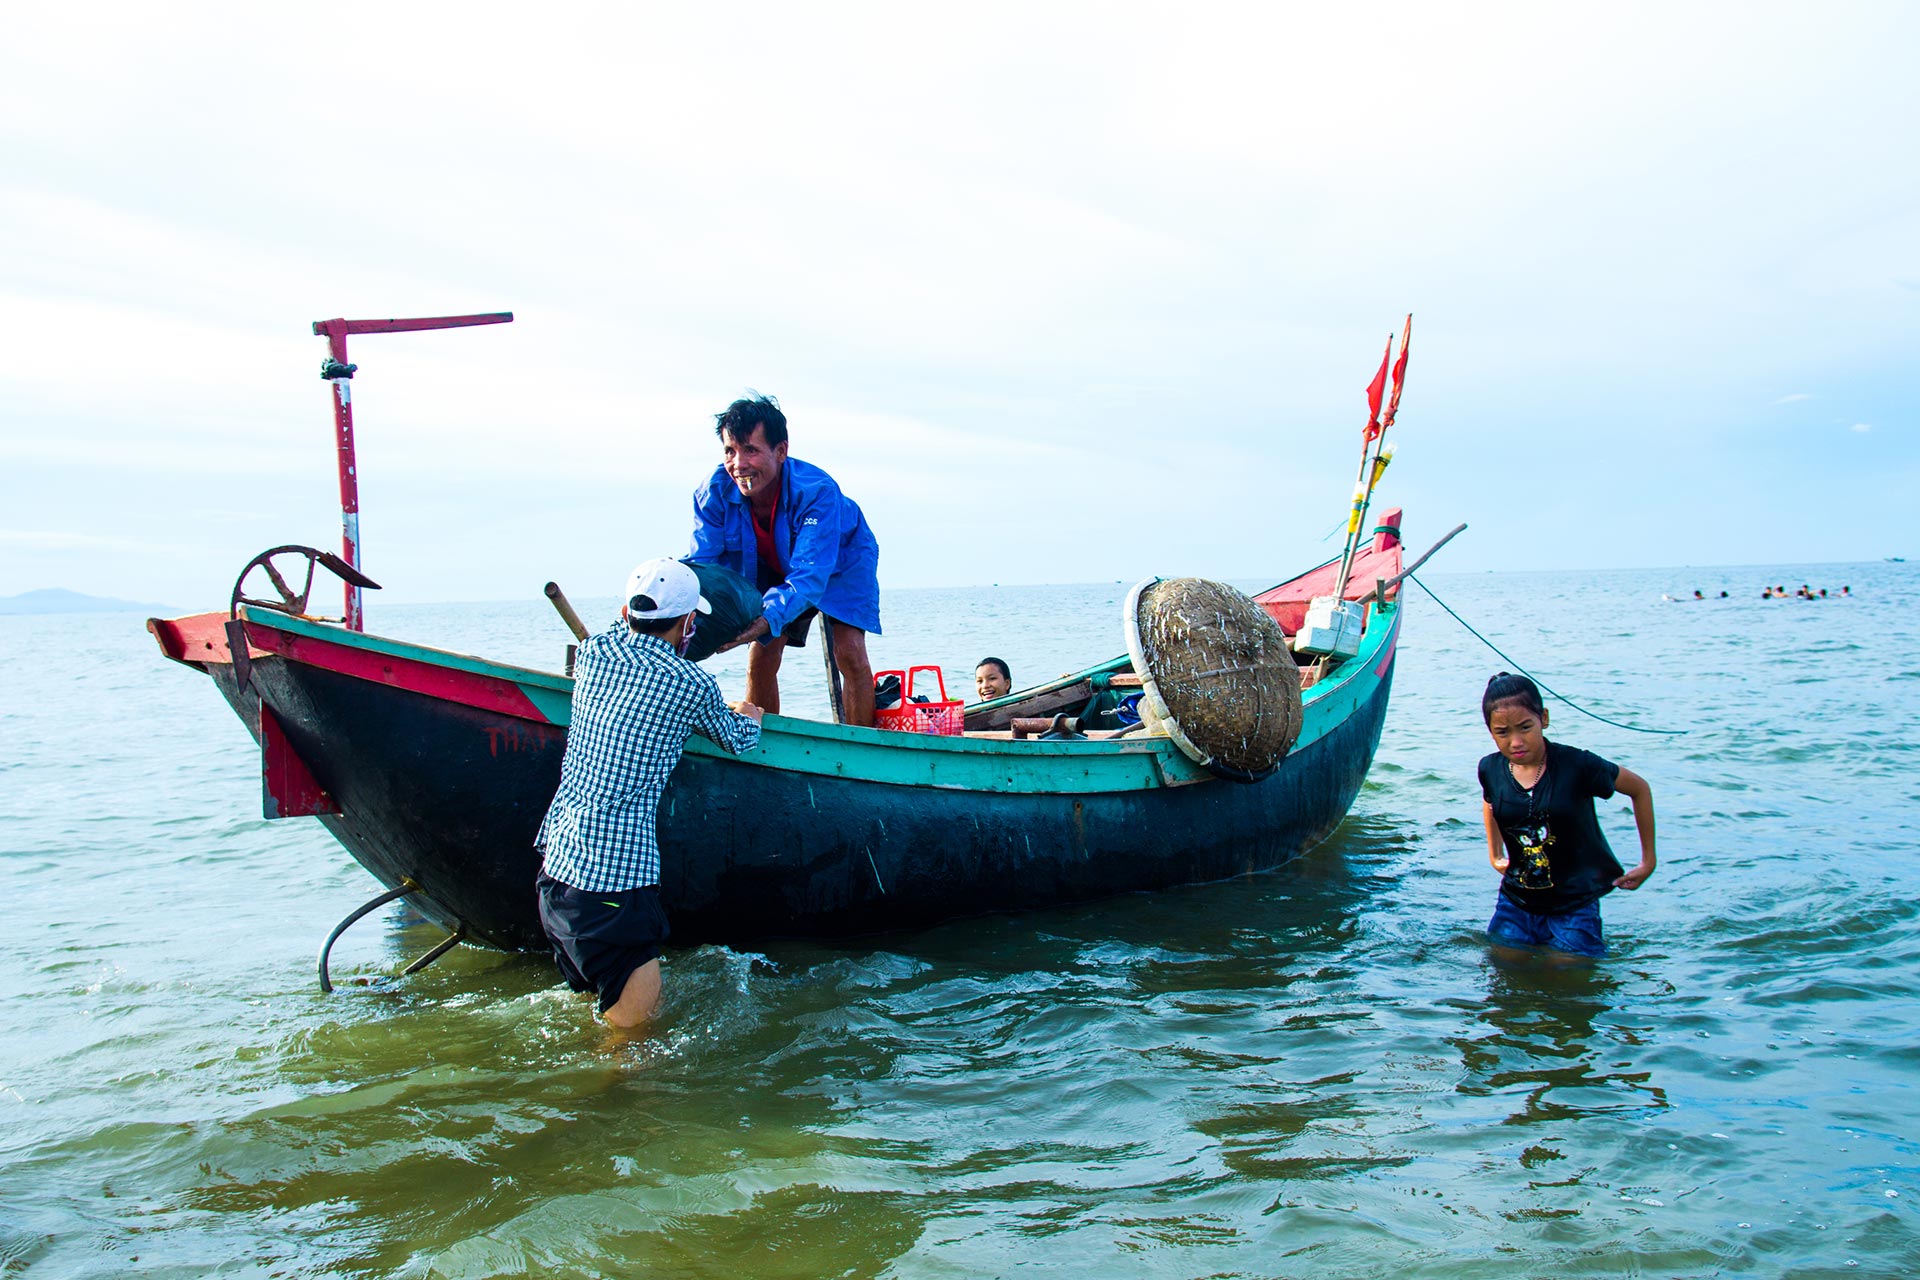  Fiskere i Hà Tĩnh. En eldre vietnamesisk fisker står i en båt og mottar en pose fra en yngre mann. To yngre jenter står i vannet ved siden av båten. 